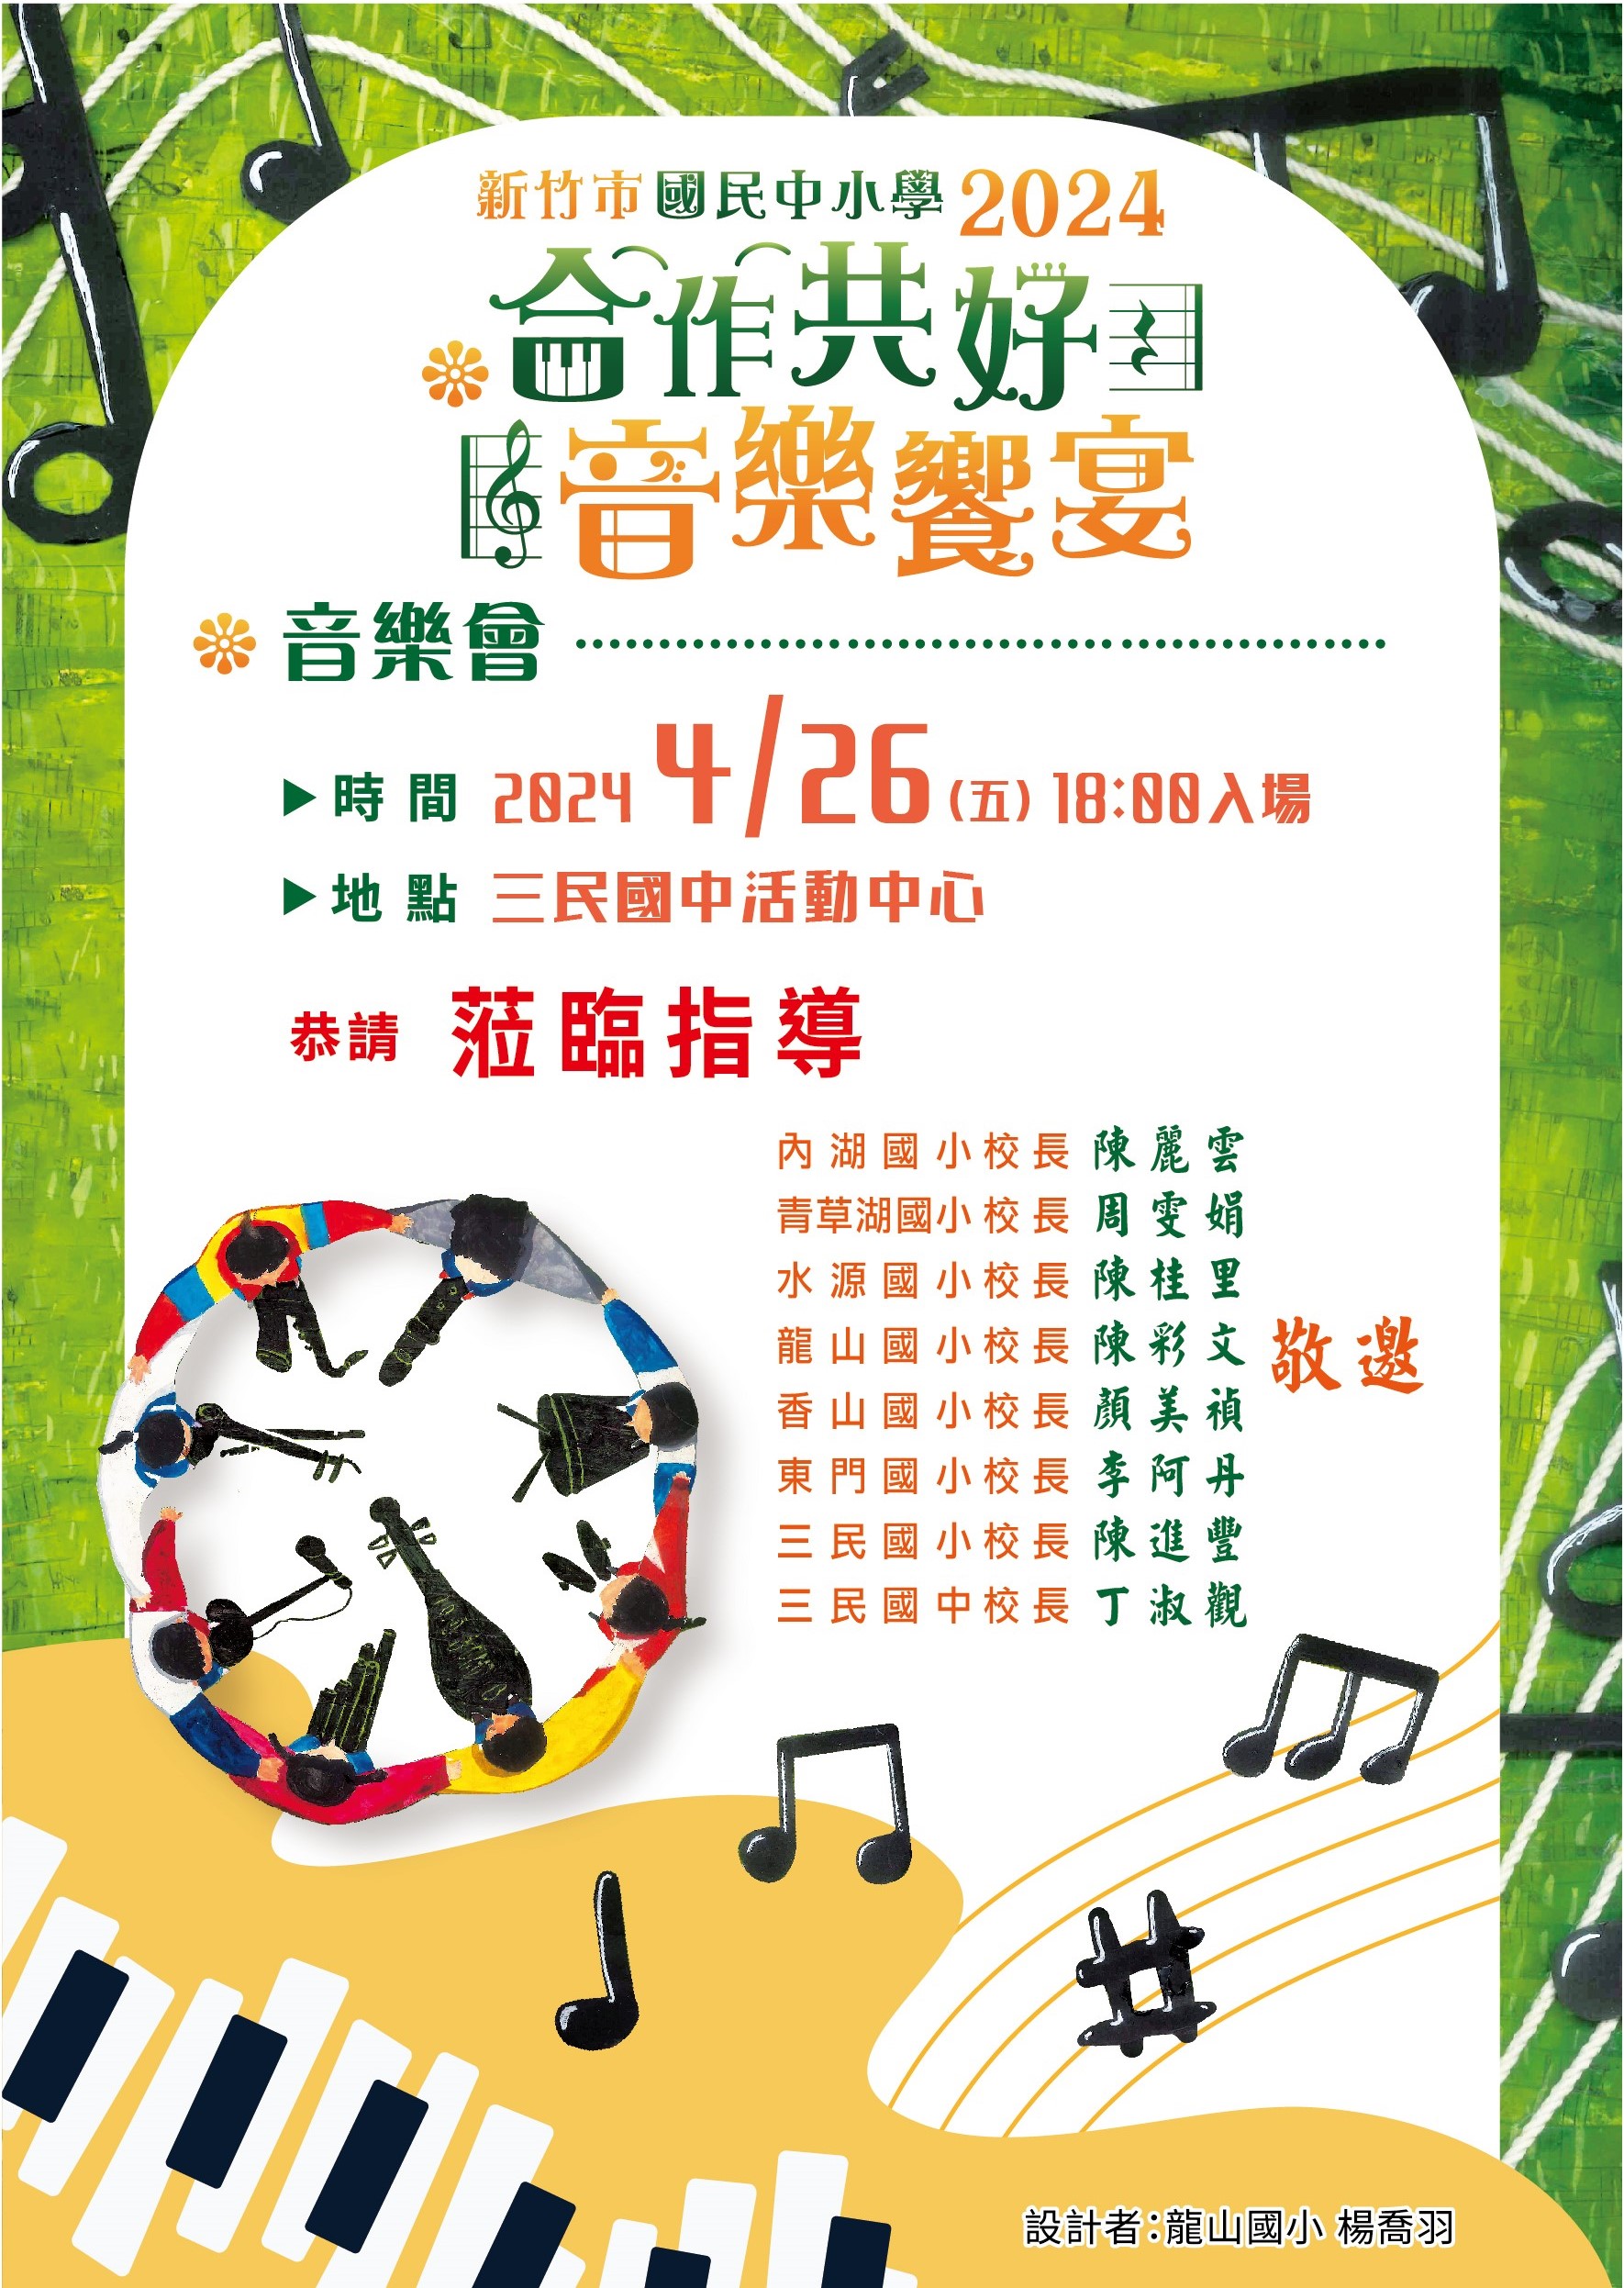 1130415內湖國小頒發音樂會海報設計入選獲獎同學活動照片